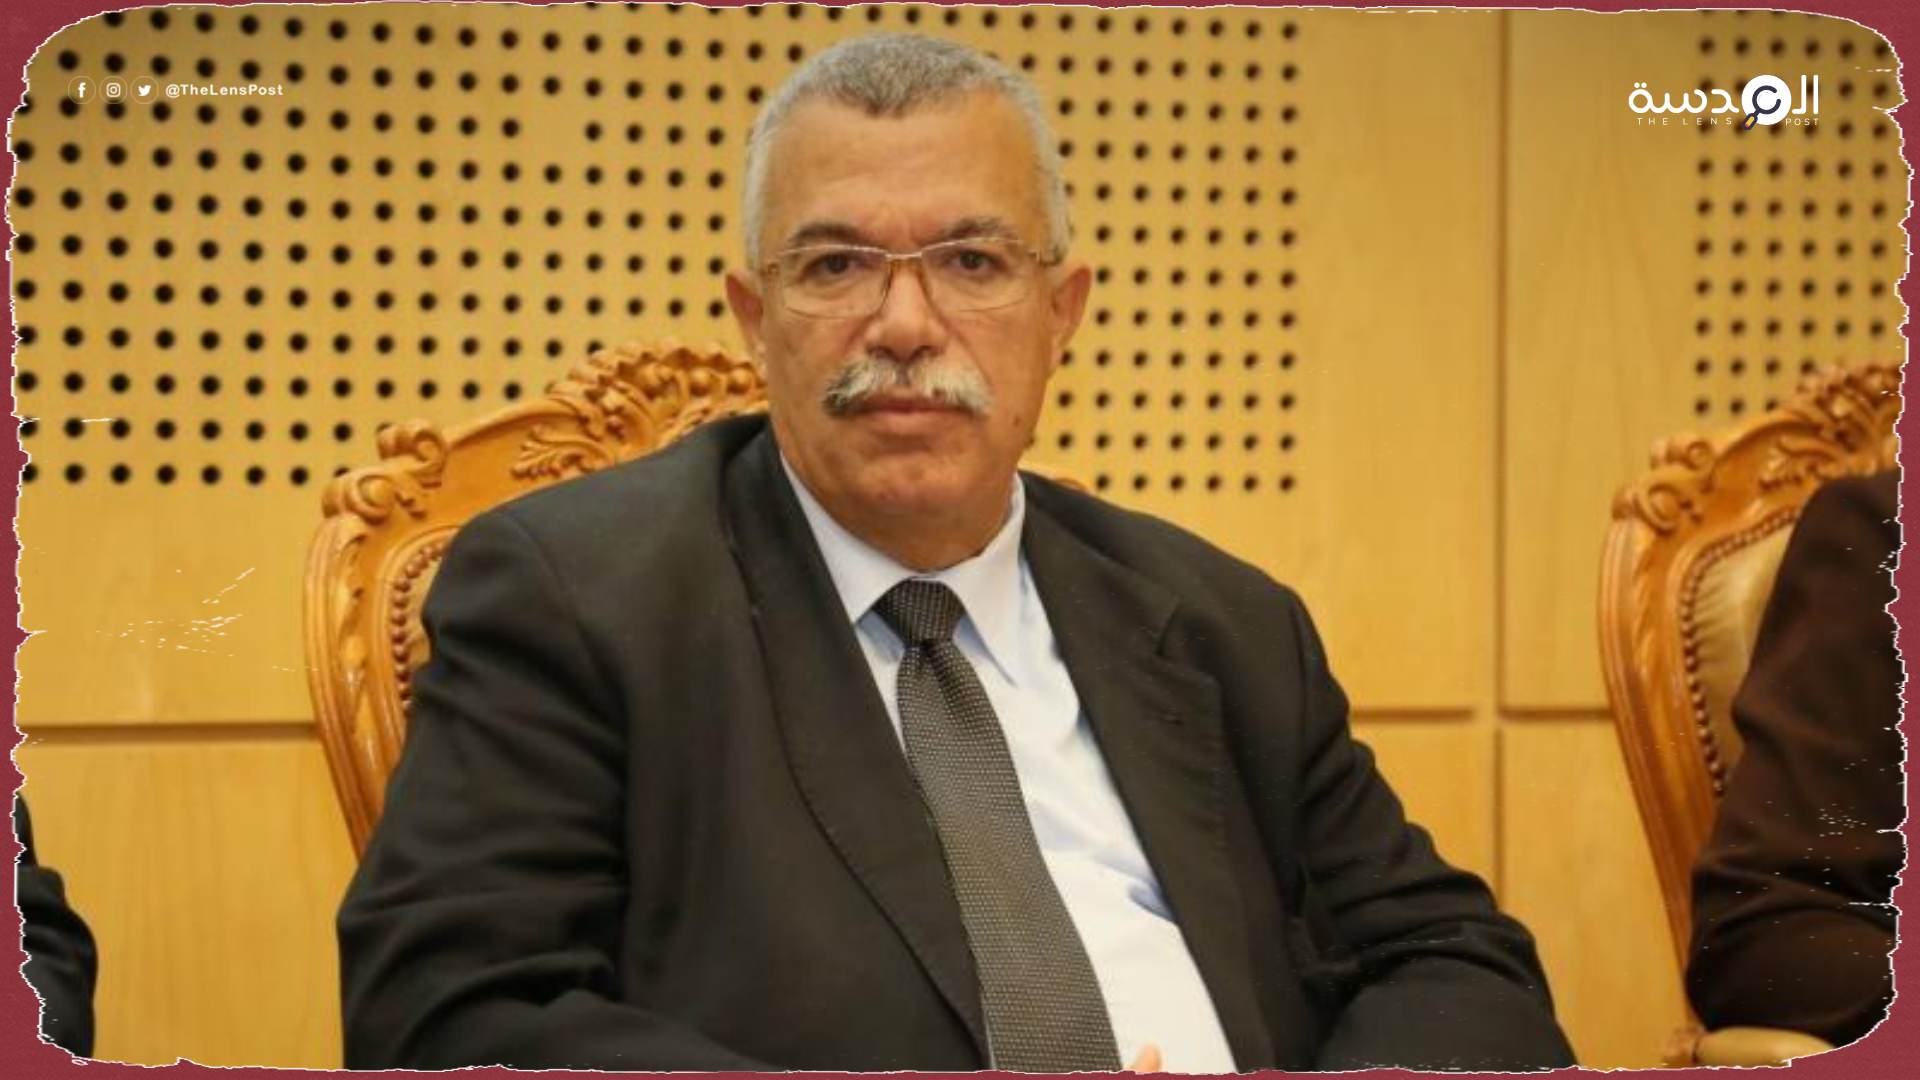 وزير سابق: "النهضة" مستعدة للانسحاب لإنهاء أزمة تونس